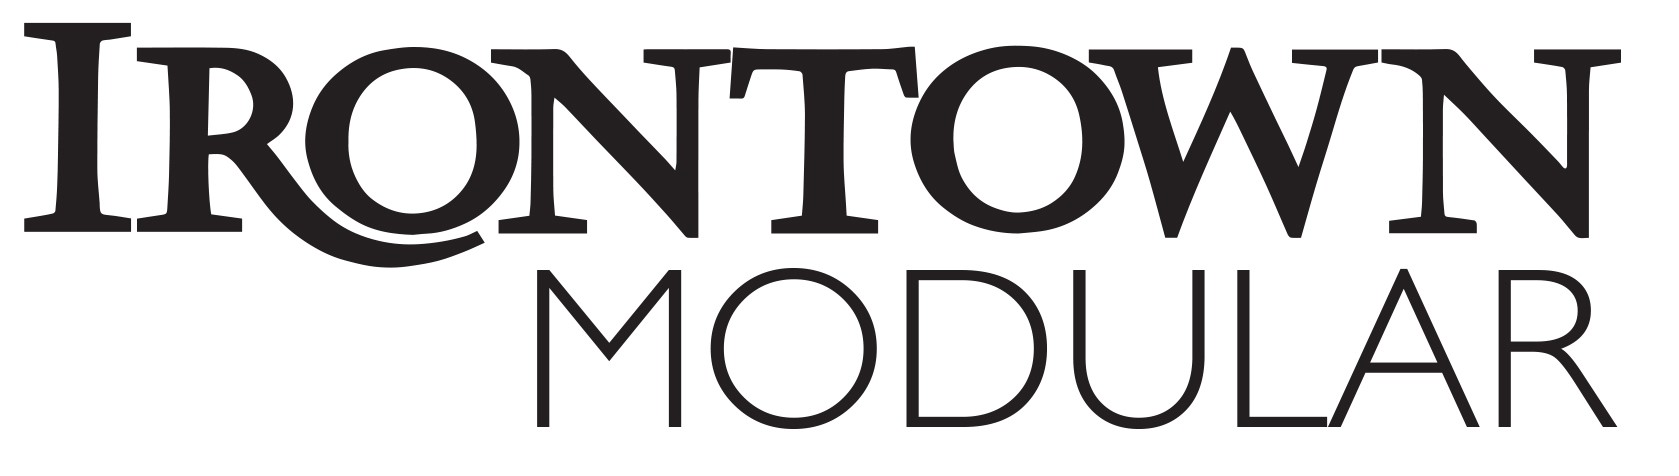 Irontown Modular Logo